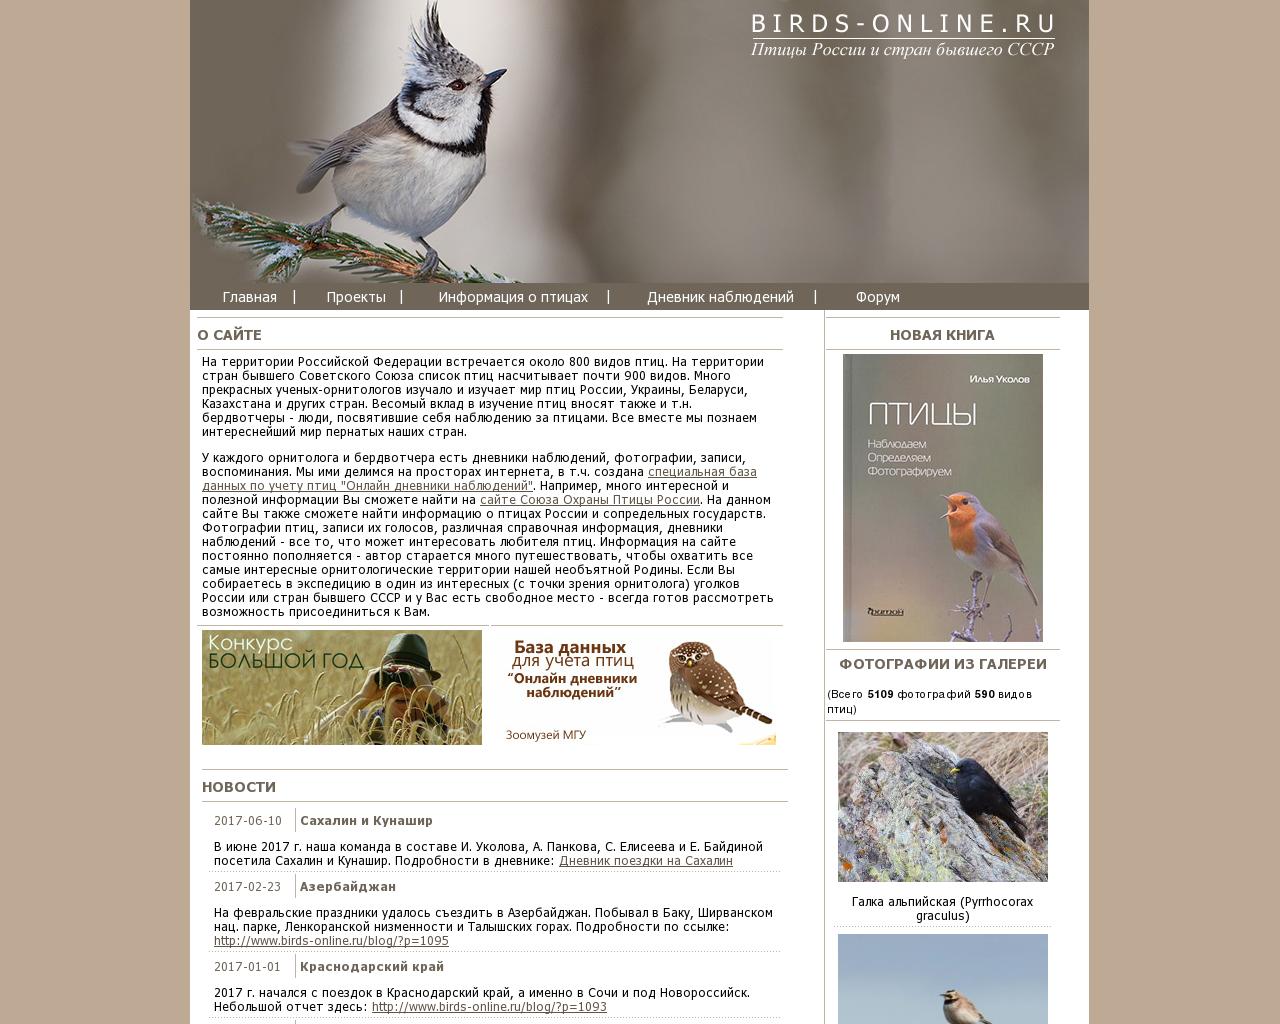 Изображение сайта birds-online.ru в разрешении 1280x1024